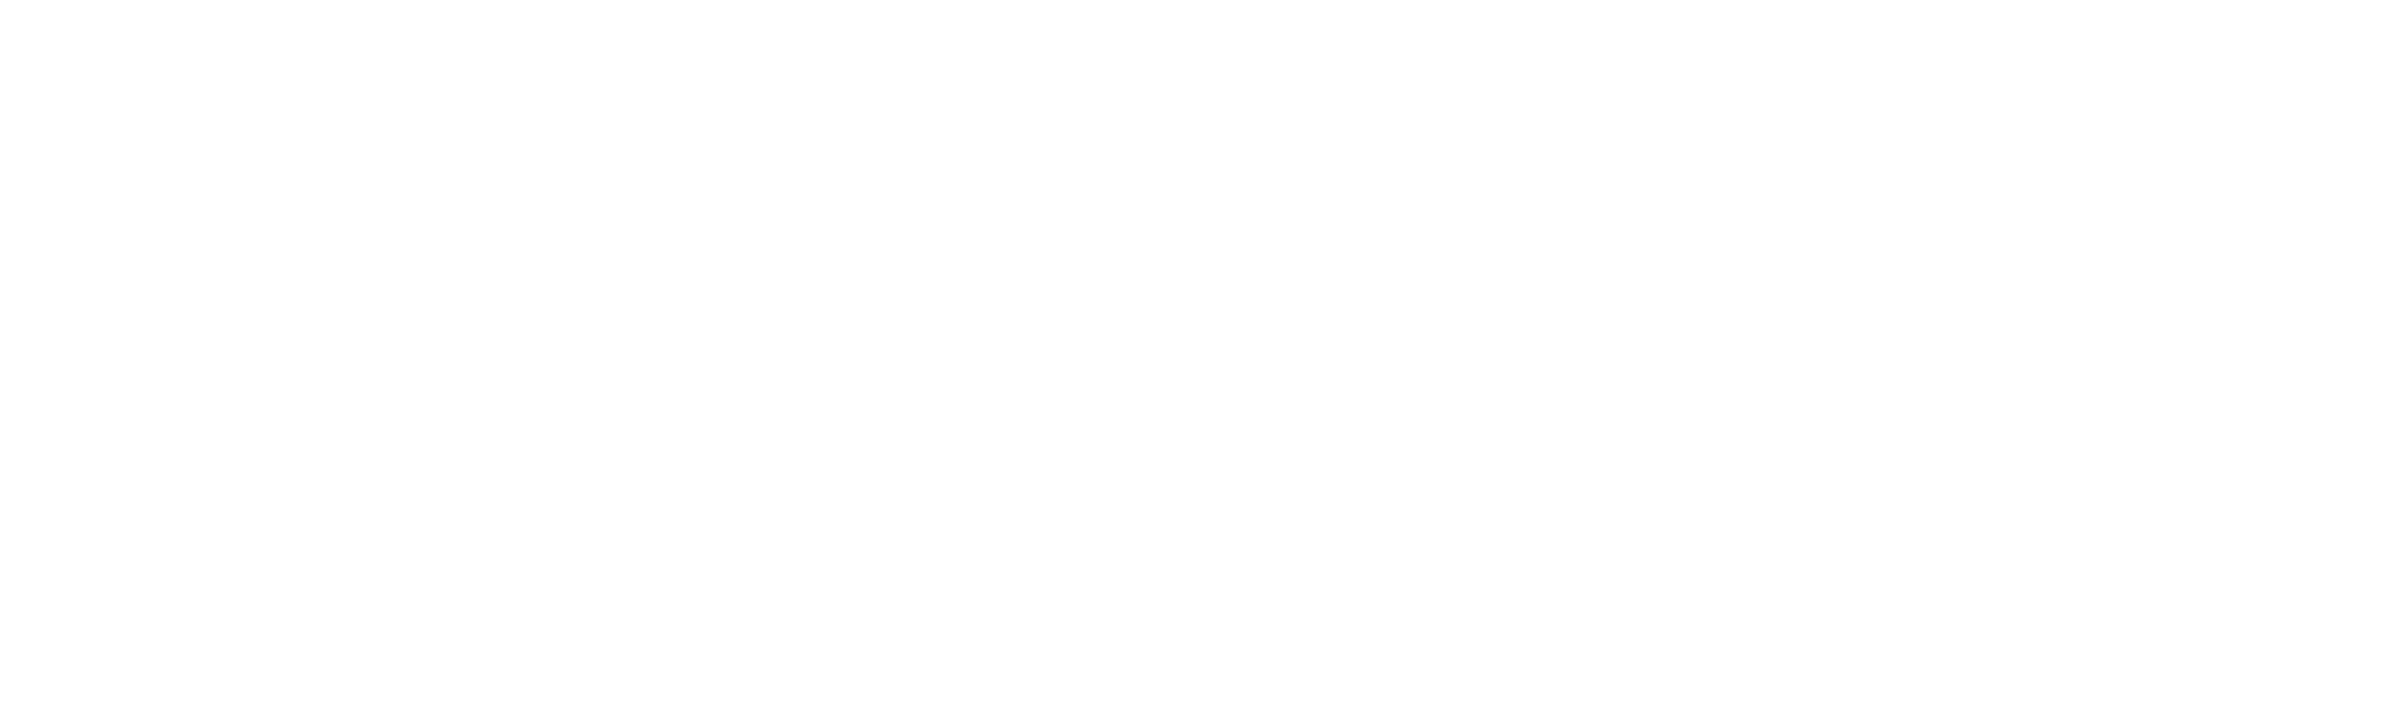 nasdaq1-logo-black-and-white